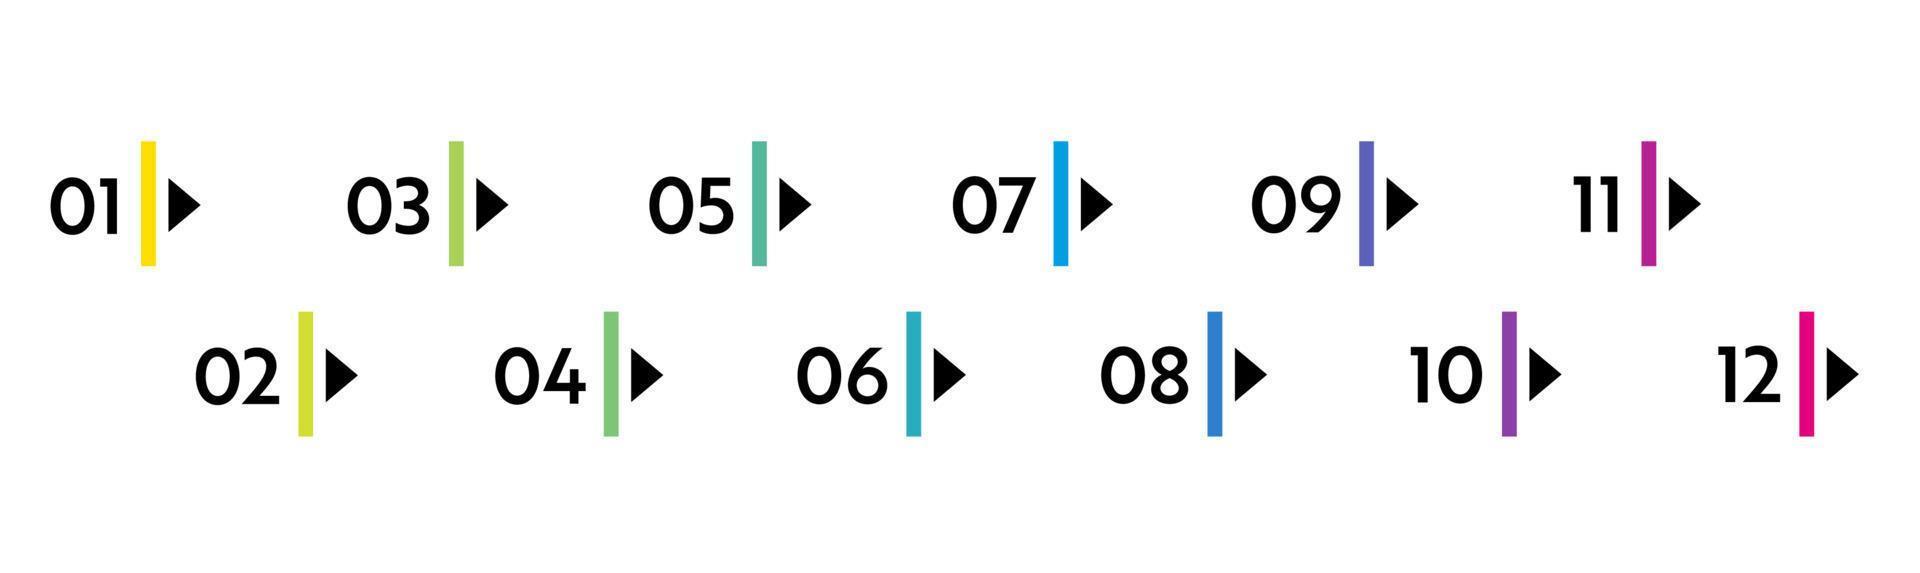 numéros de puces. marqueurs de liste colorés de 1 à 12. éléments de conception vectorielle définis pour l'infographie moderne vecteur